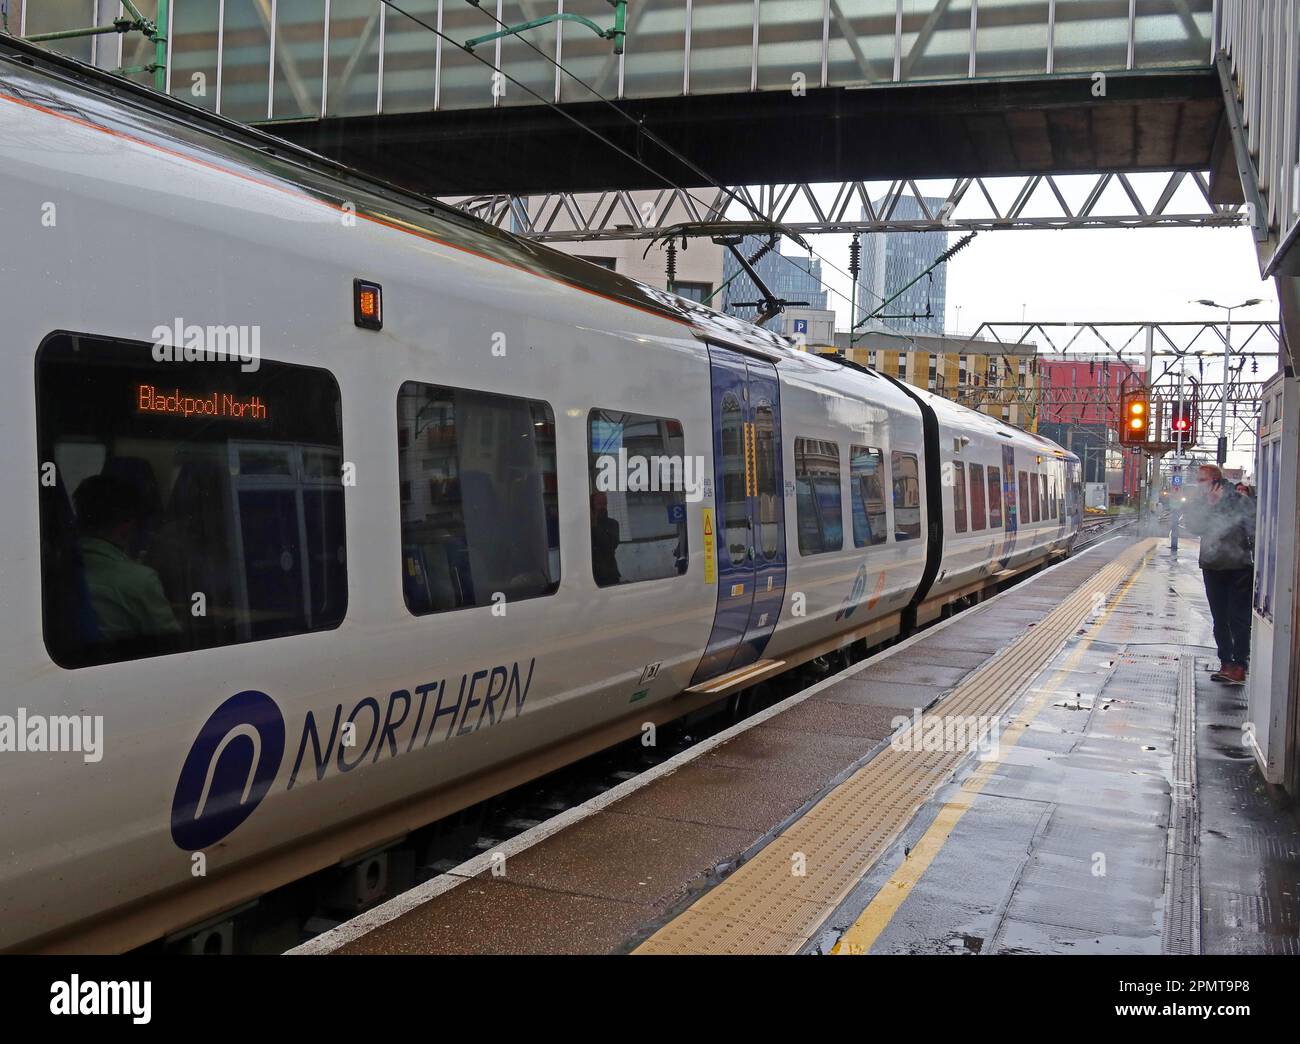 Servizio ferroviario Northern, EMU - unità elettrica multipla, su una piattaforma piovosa, alla stazione ferroviaria Manchester Oxford Road, Inghilterra, Regno Unito, M1 6FU Foto Stock